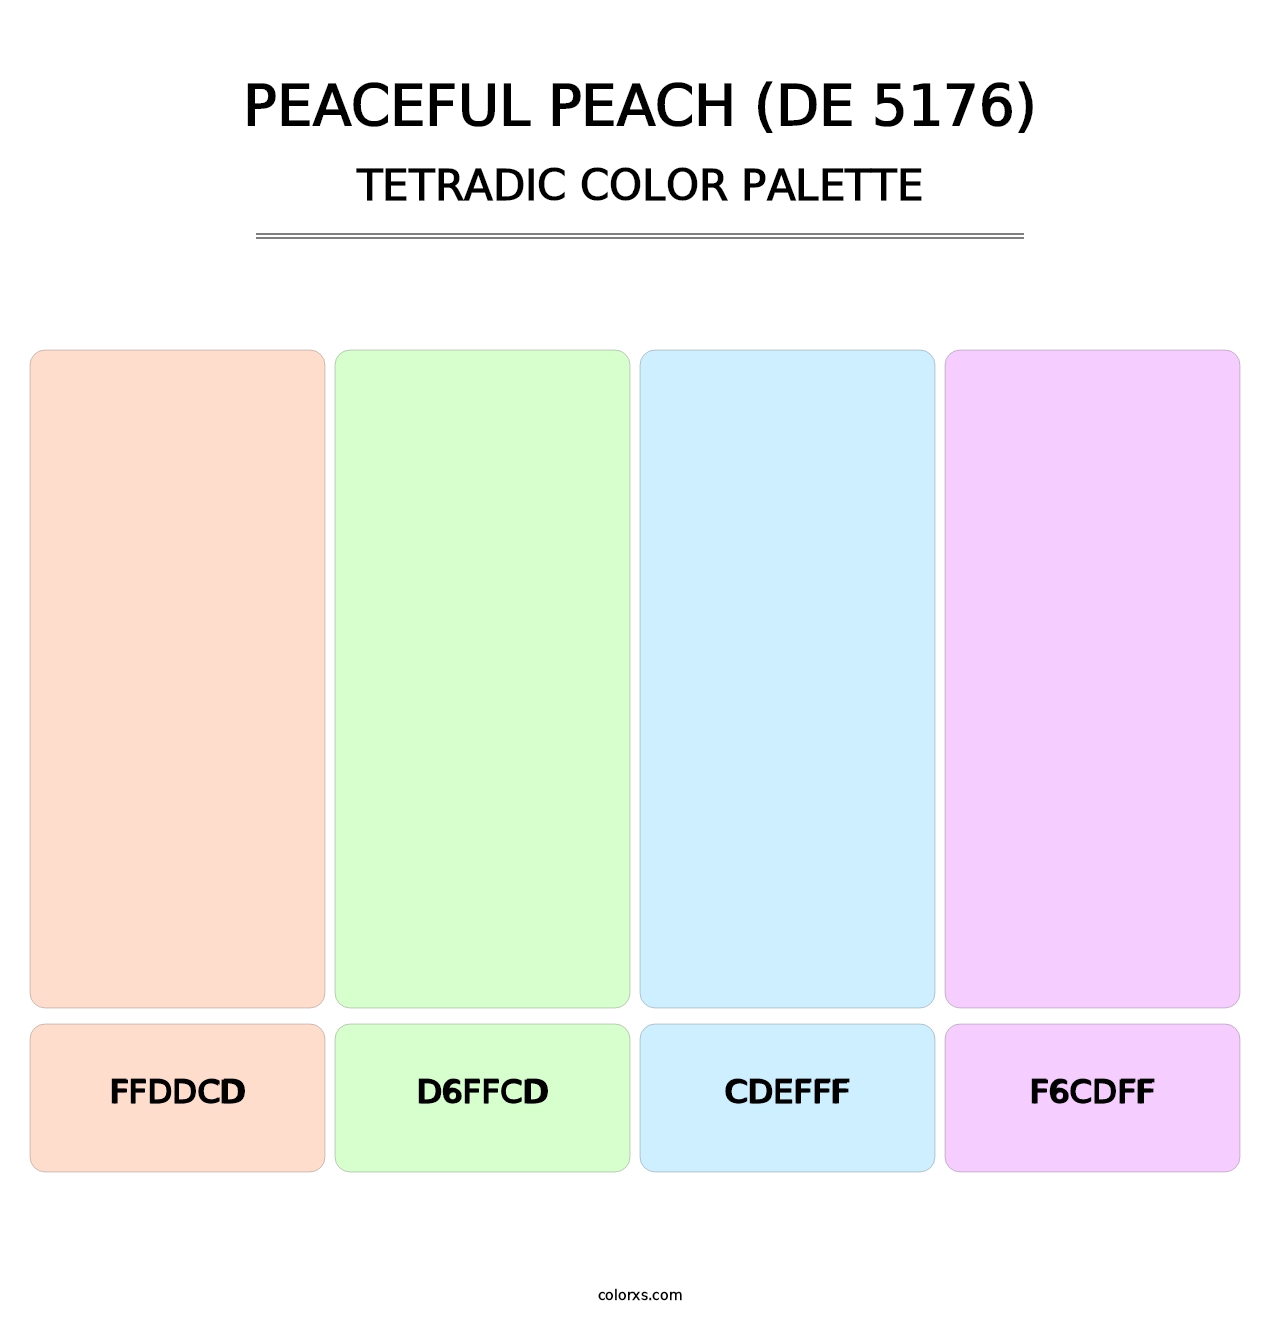 Peaceful Peach (DE 5176) - Tetradic Color Palette